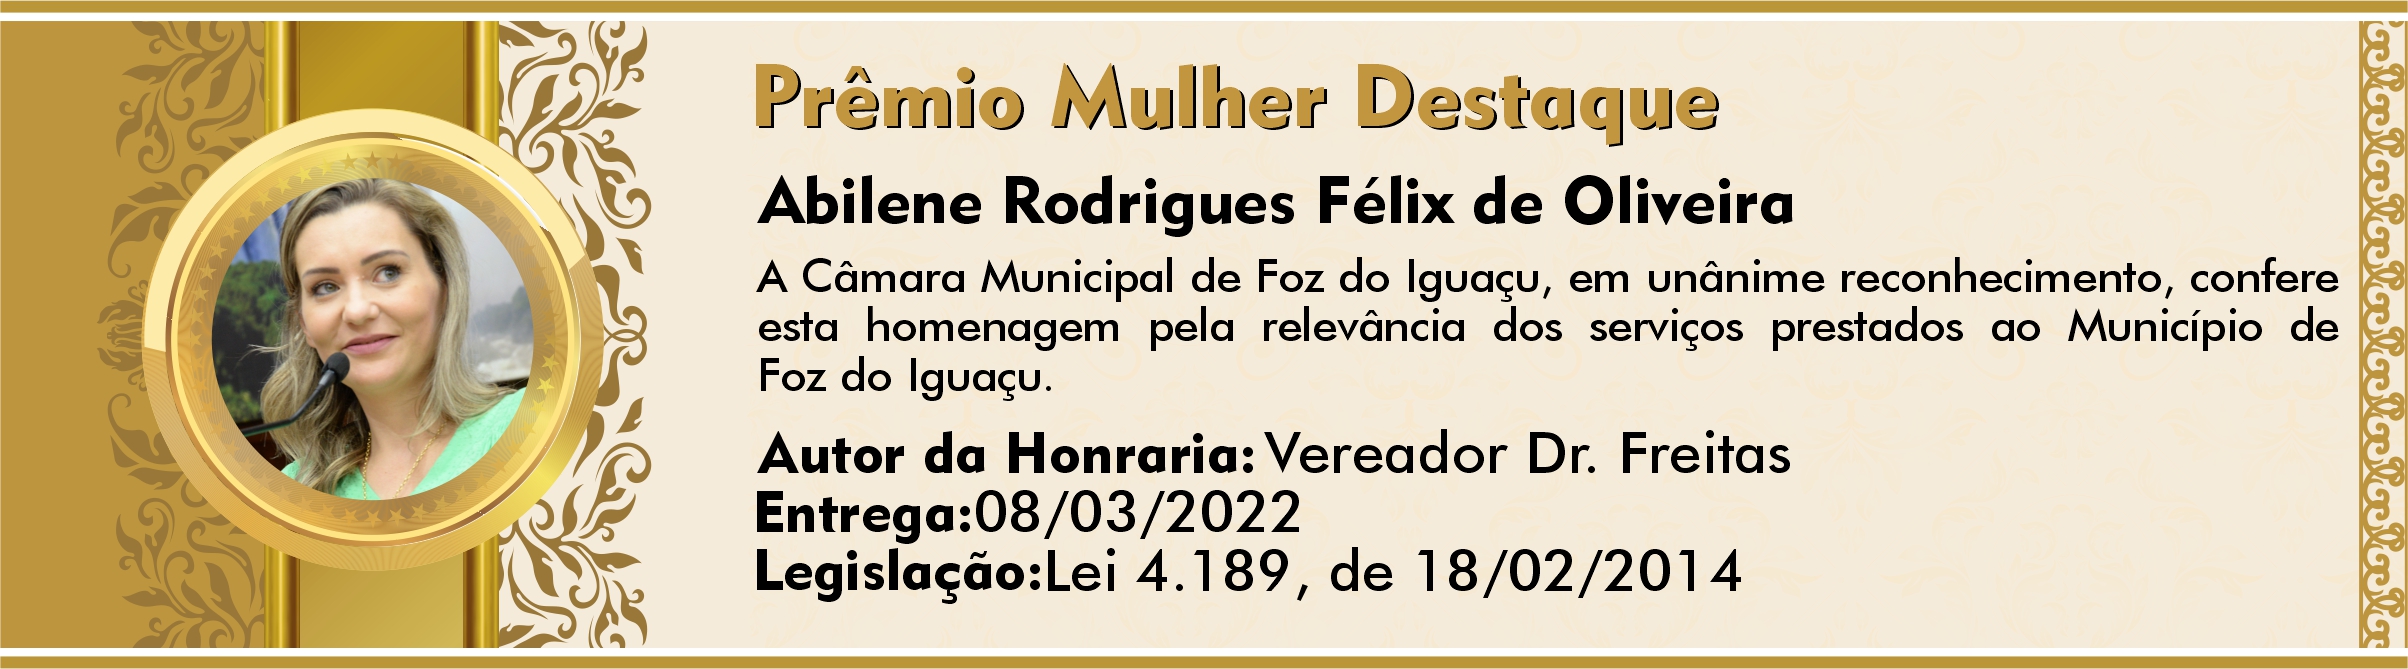 Abilene Rodrigues Félix de Oliveira